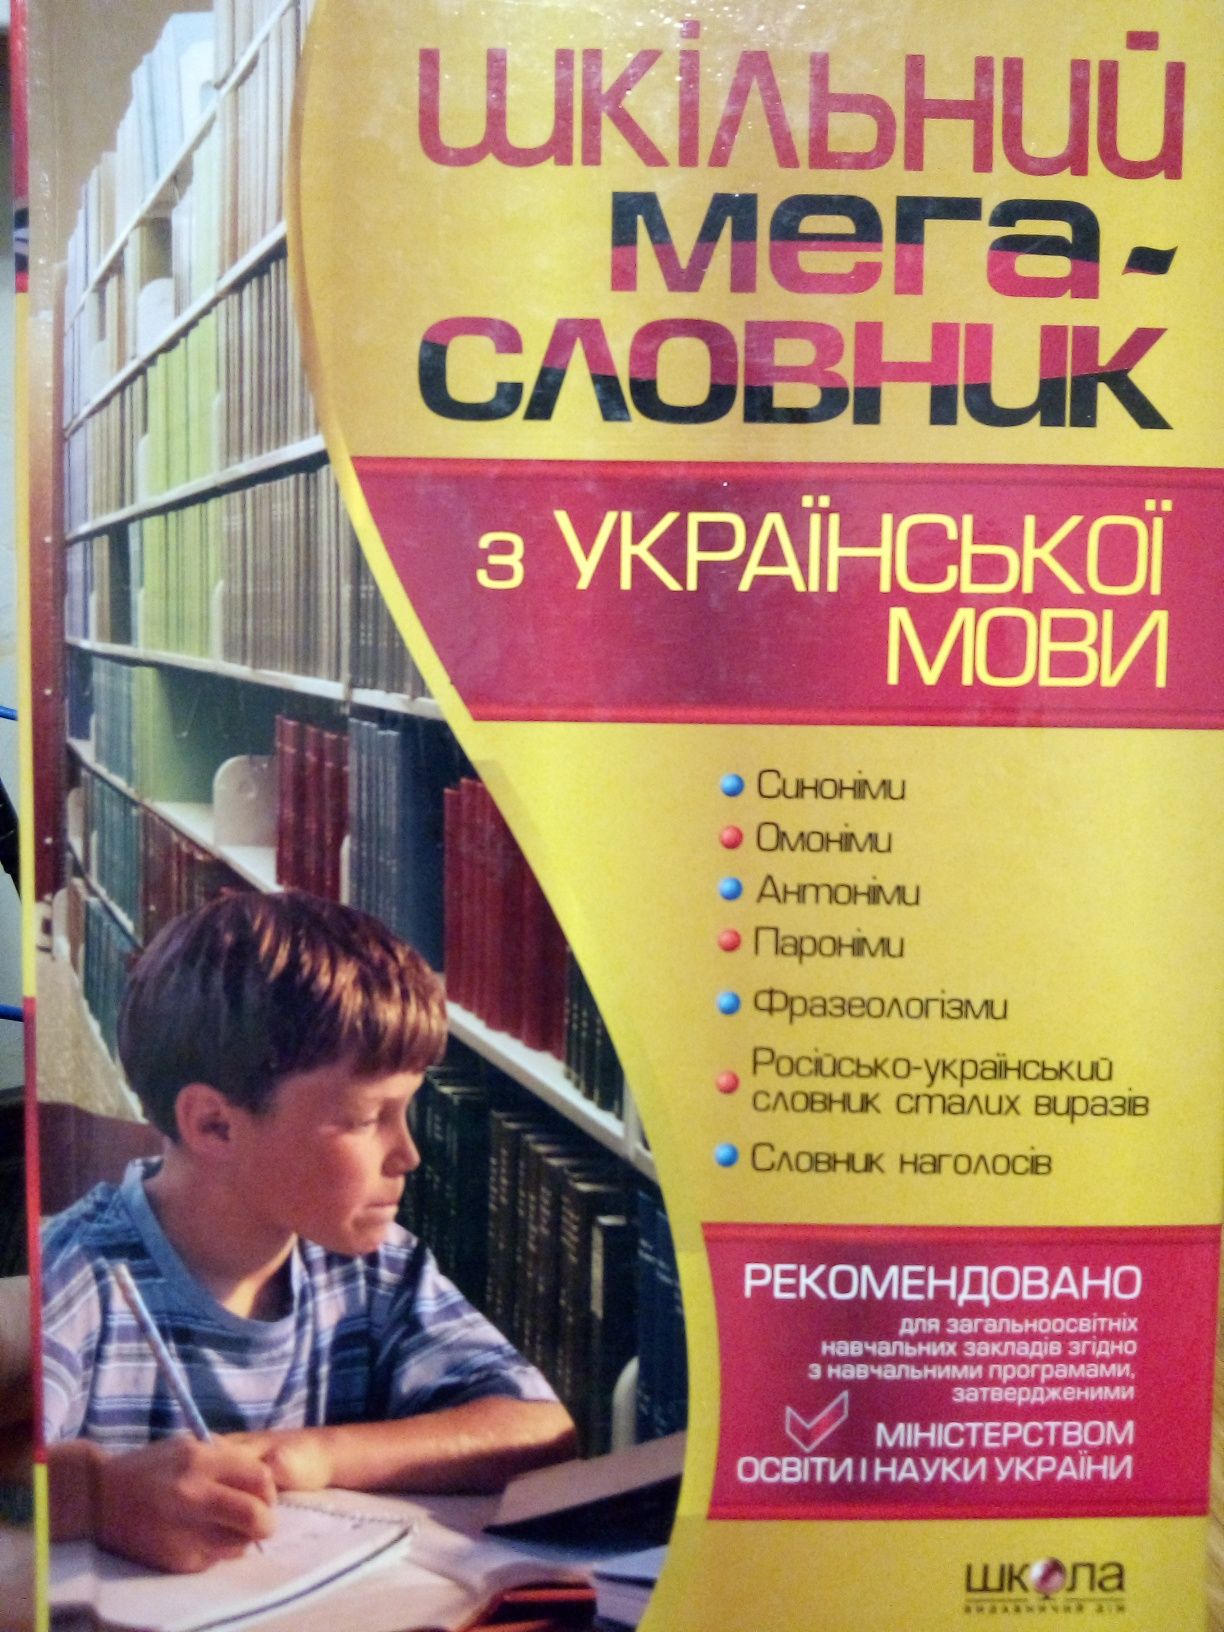 Шкільний мегасловник з української мови